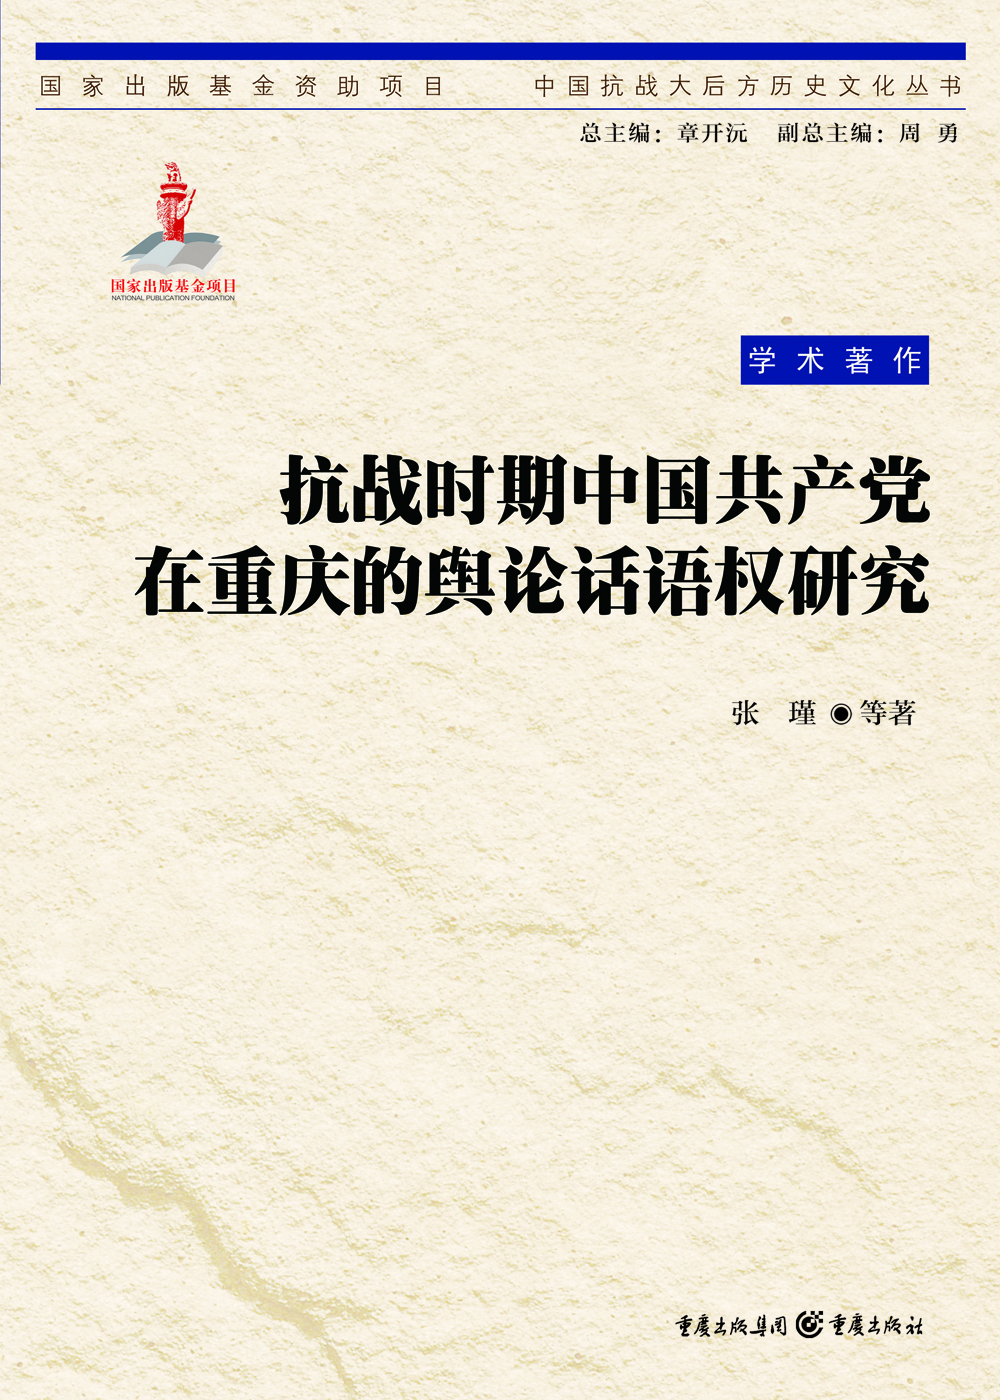 抗战时期中国共产党在重庆的舆论话语权